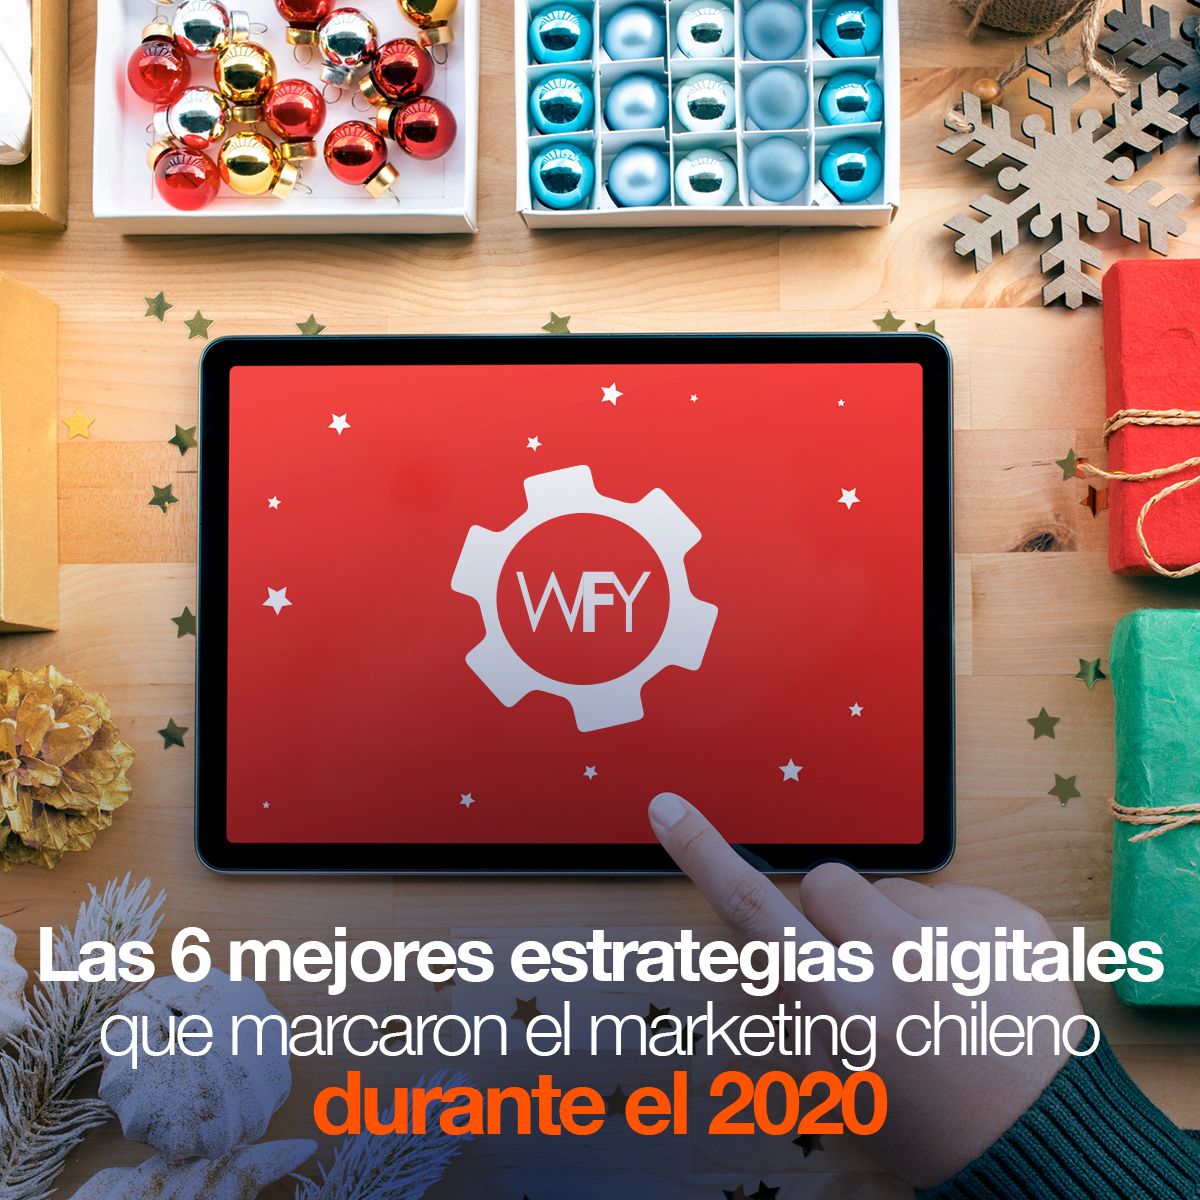 Las 6 mejores estrategias digitales que marcaron el marketing chileno durante el 2020